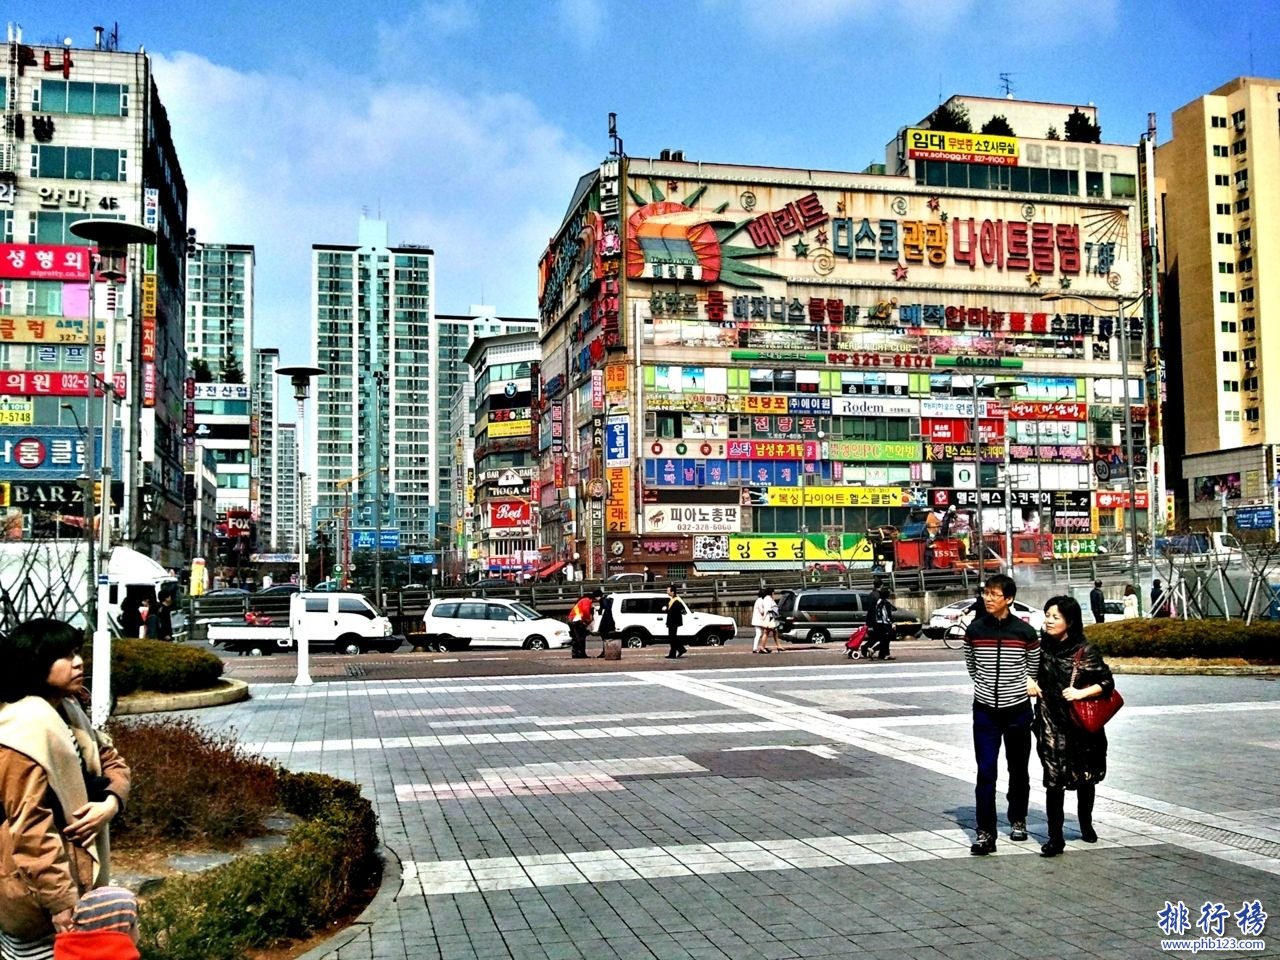 韩国十大城市排名:韩国最大的城市首尔釜山第二